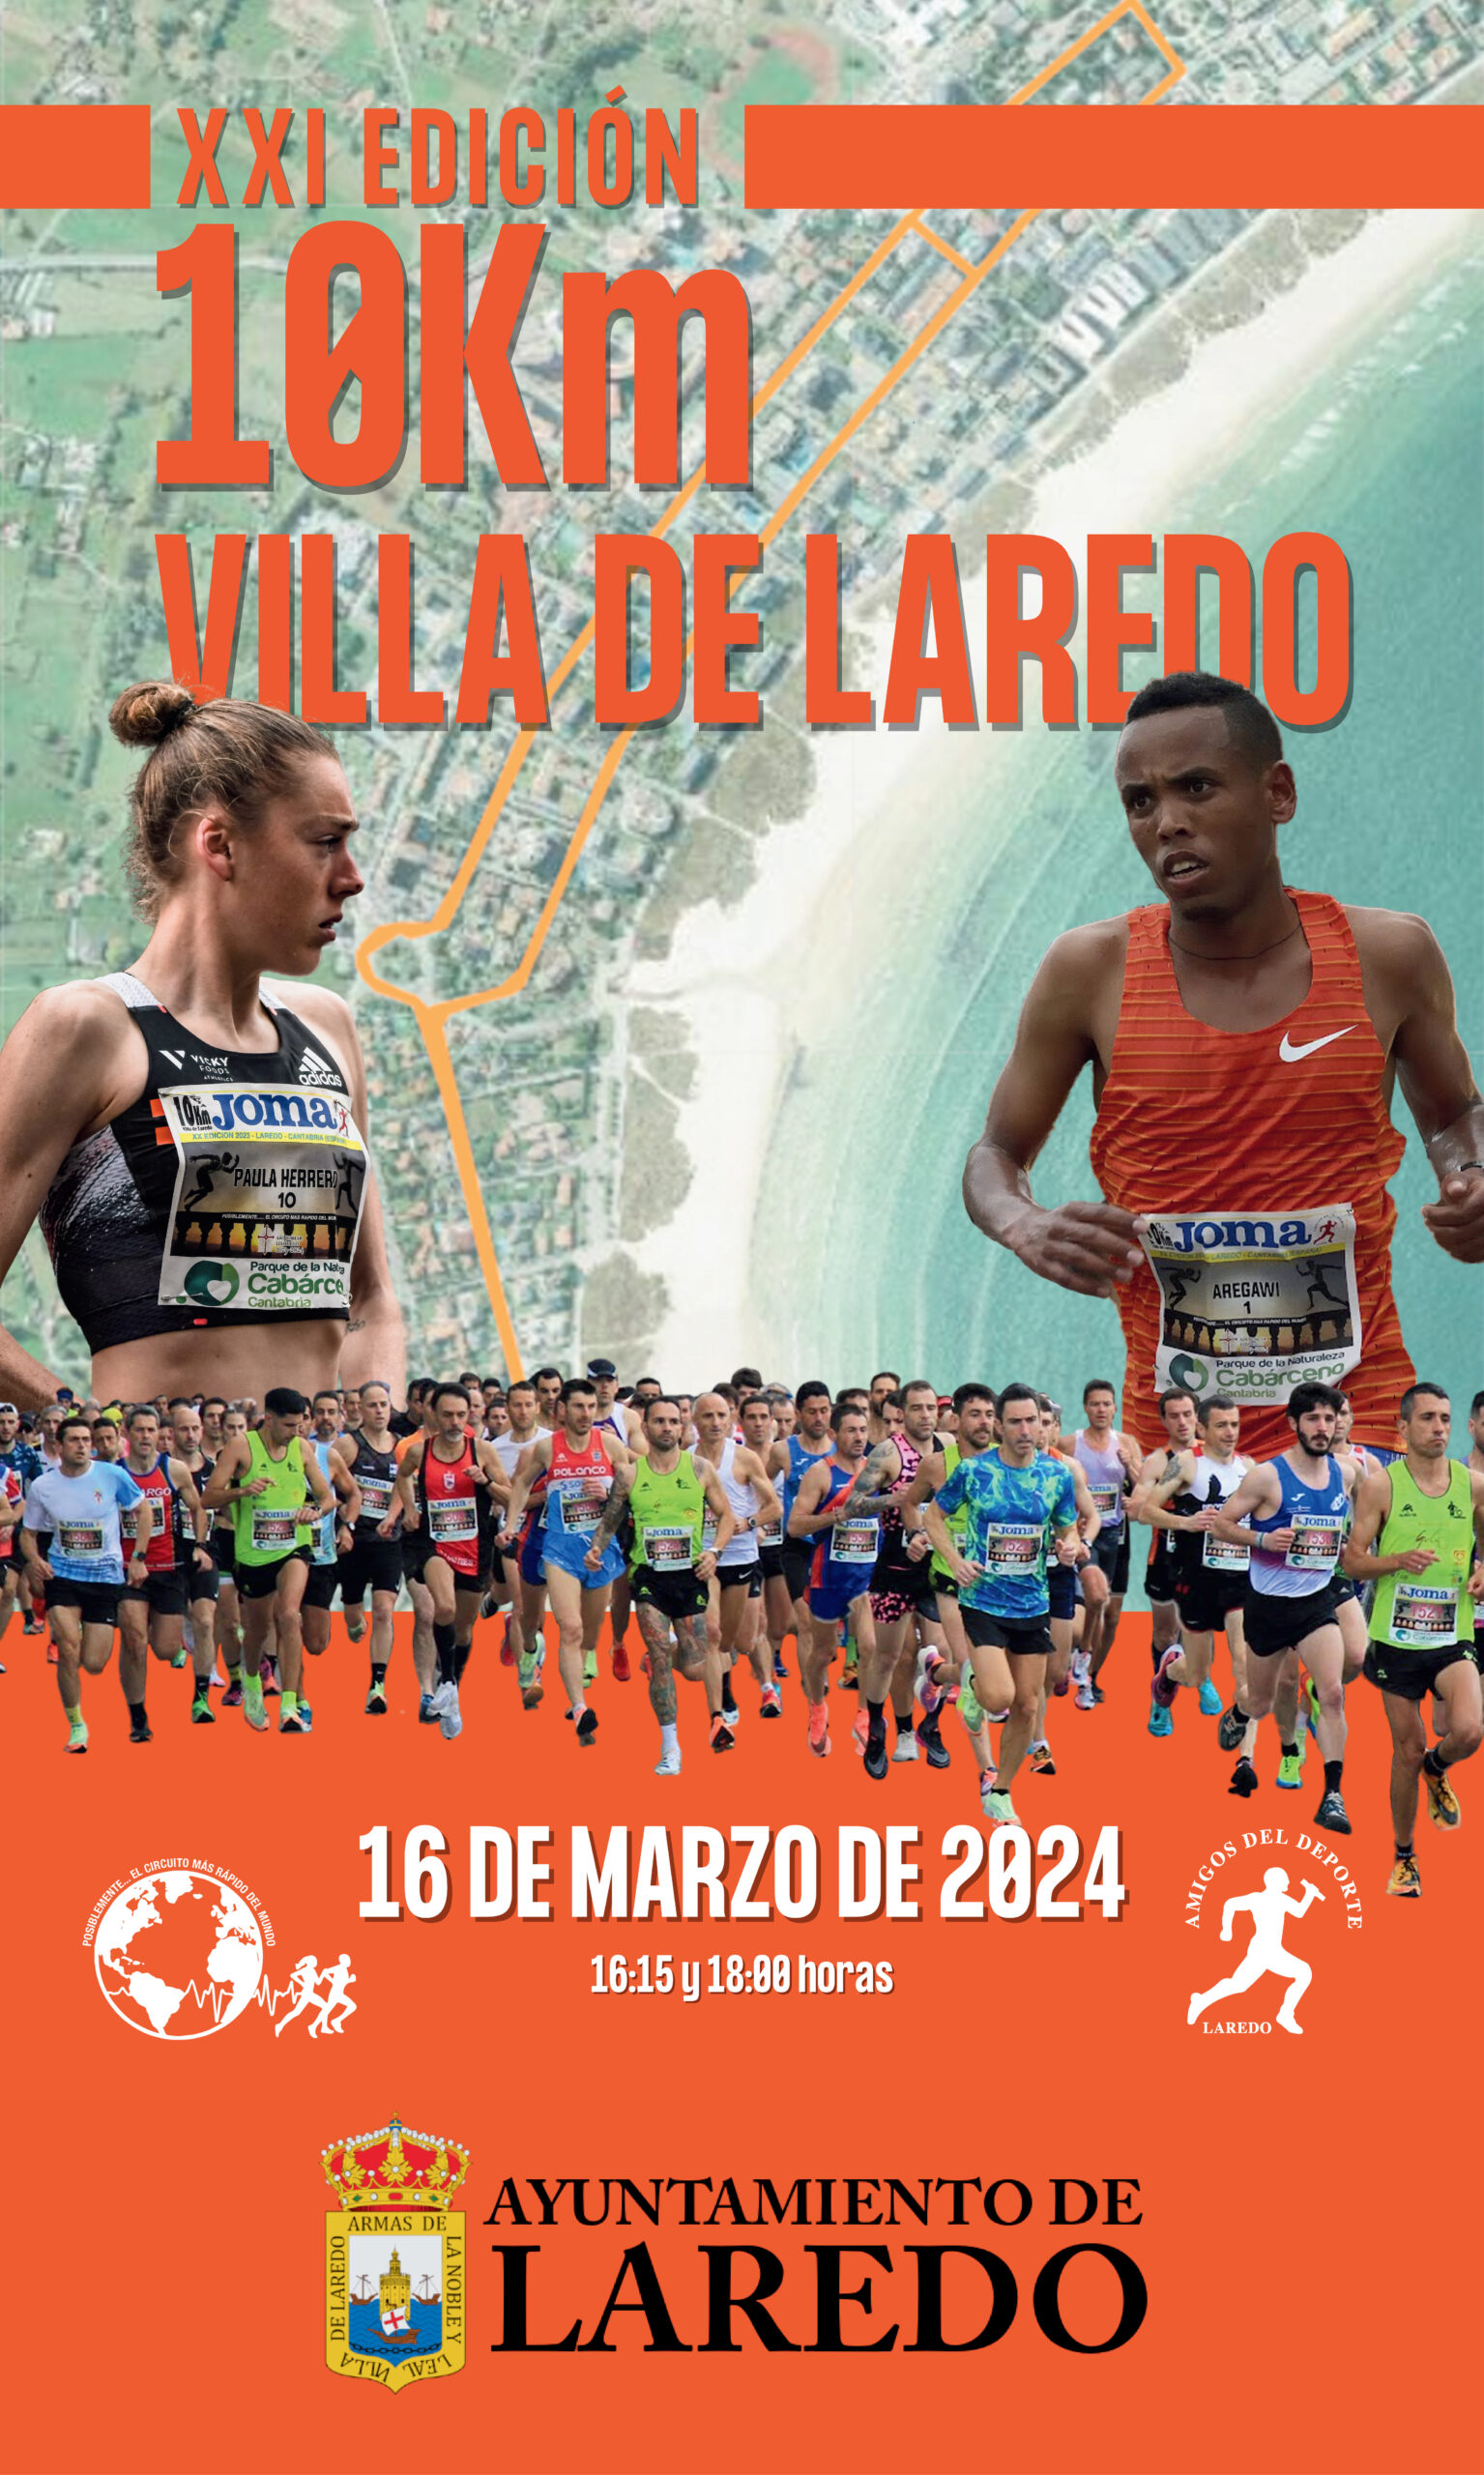 La XXI edición de los ‘10 Km Villa de Laredo’ se celebrará el 16 de marzo